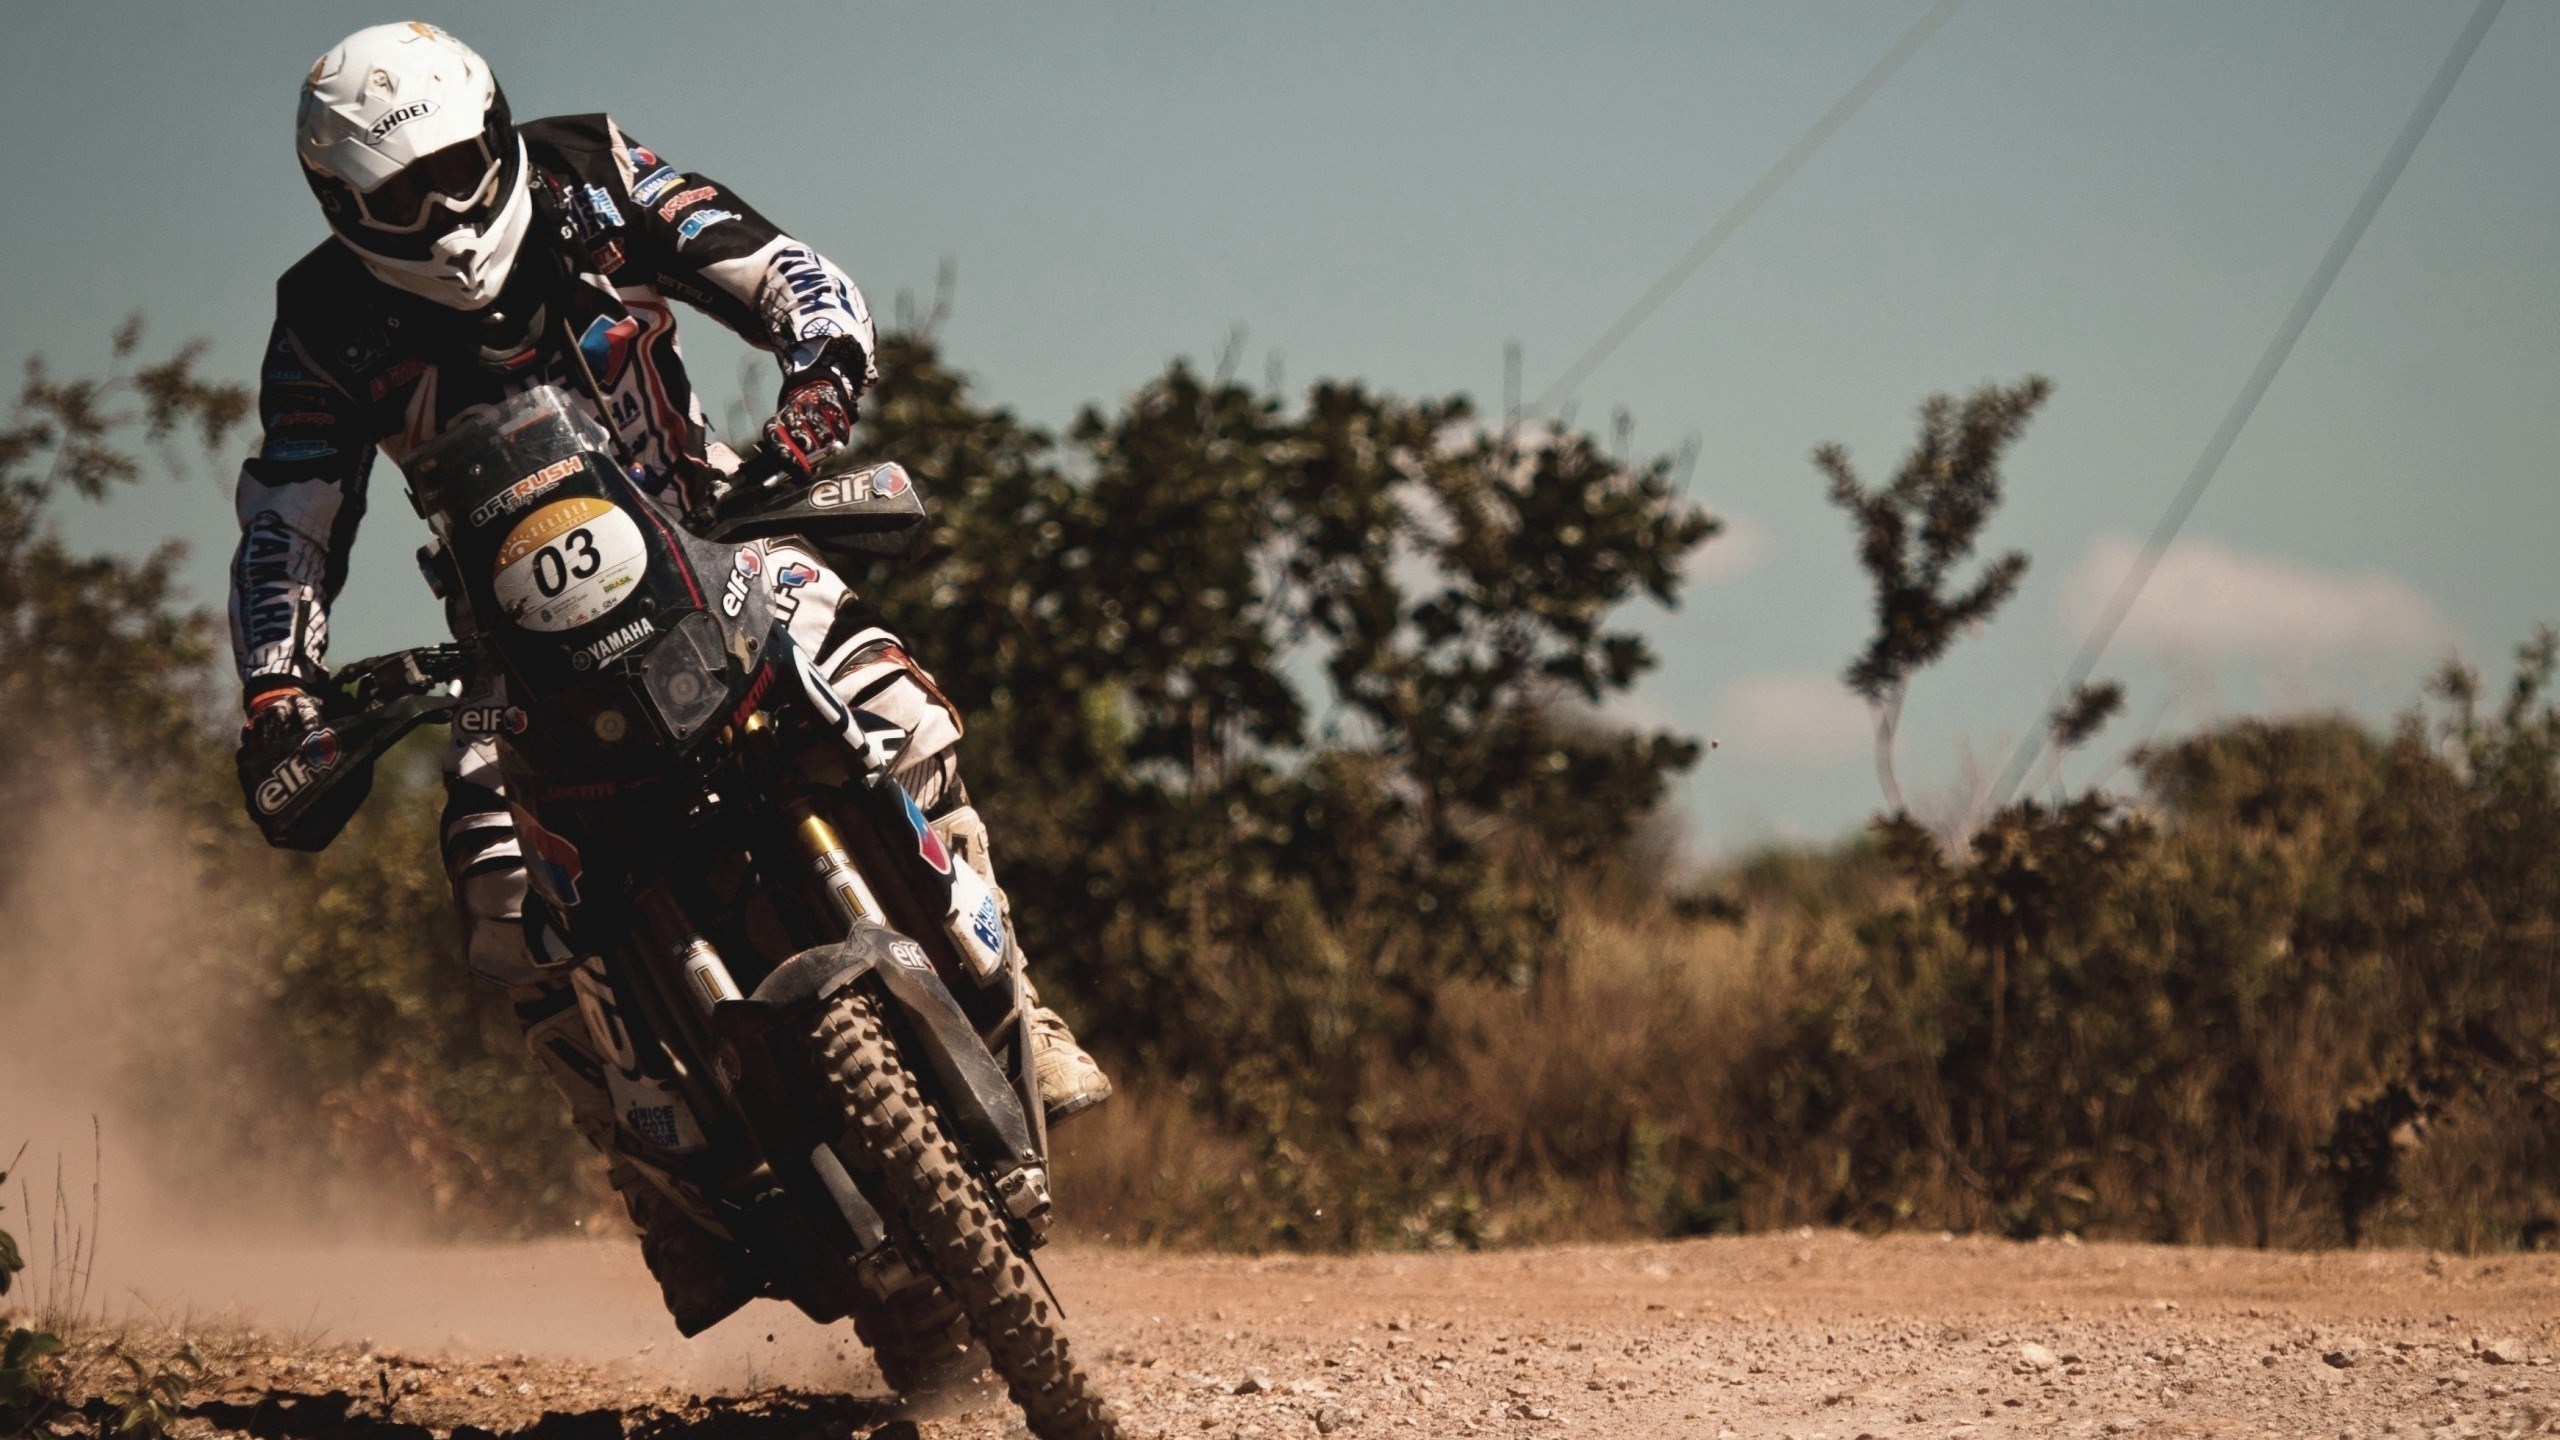 Mann im Schwarzen Und Weißen Motorradanzug, Der Motocross-Dirt-Bike Fährt Riding. Wallpaper in 2560x1440 Resolution